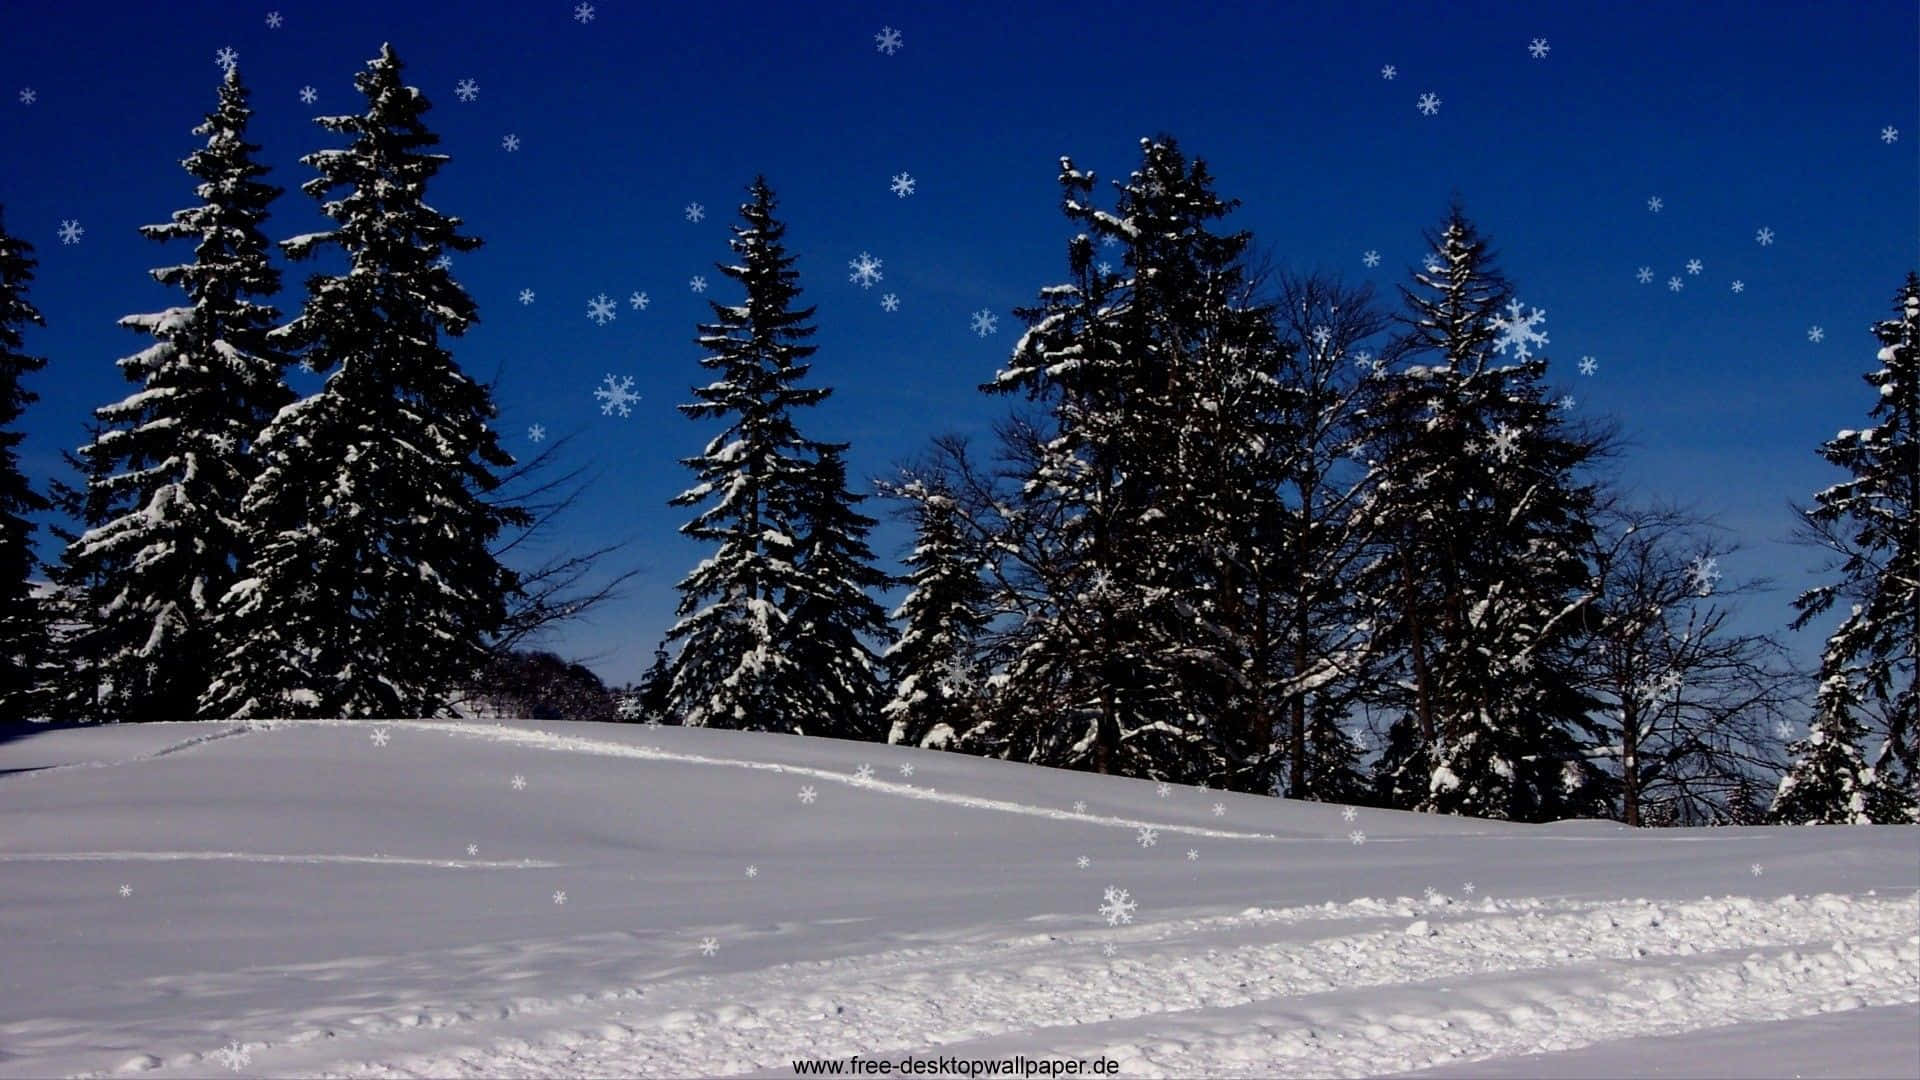 Goditila Bellezza Dell'inverno Con Questo Sfondo Di Neve Scintillante Ad Alta Risoluzione.